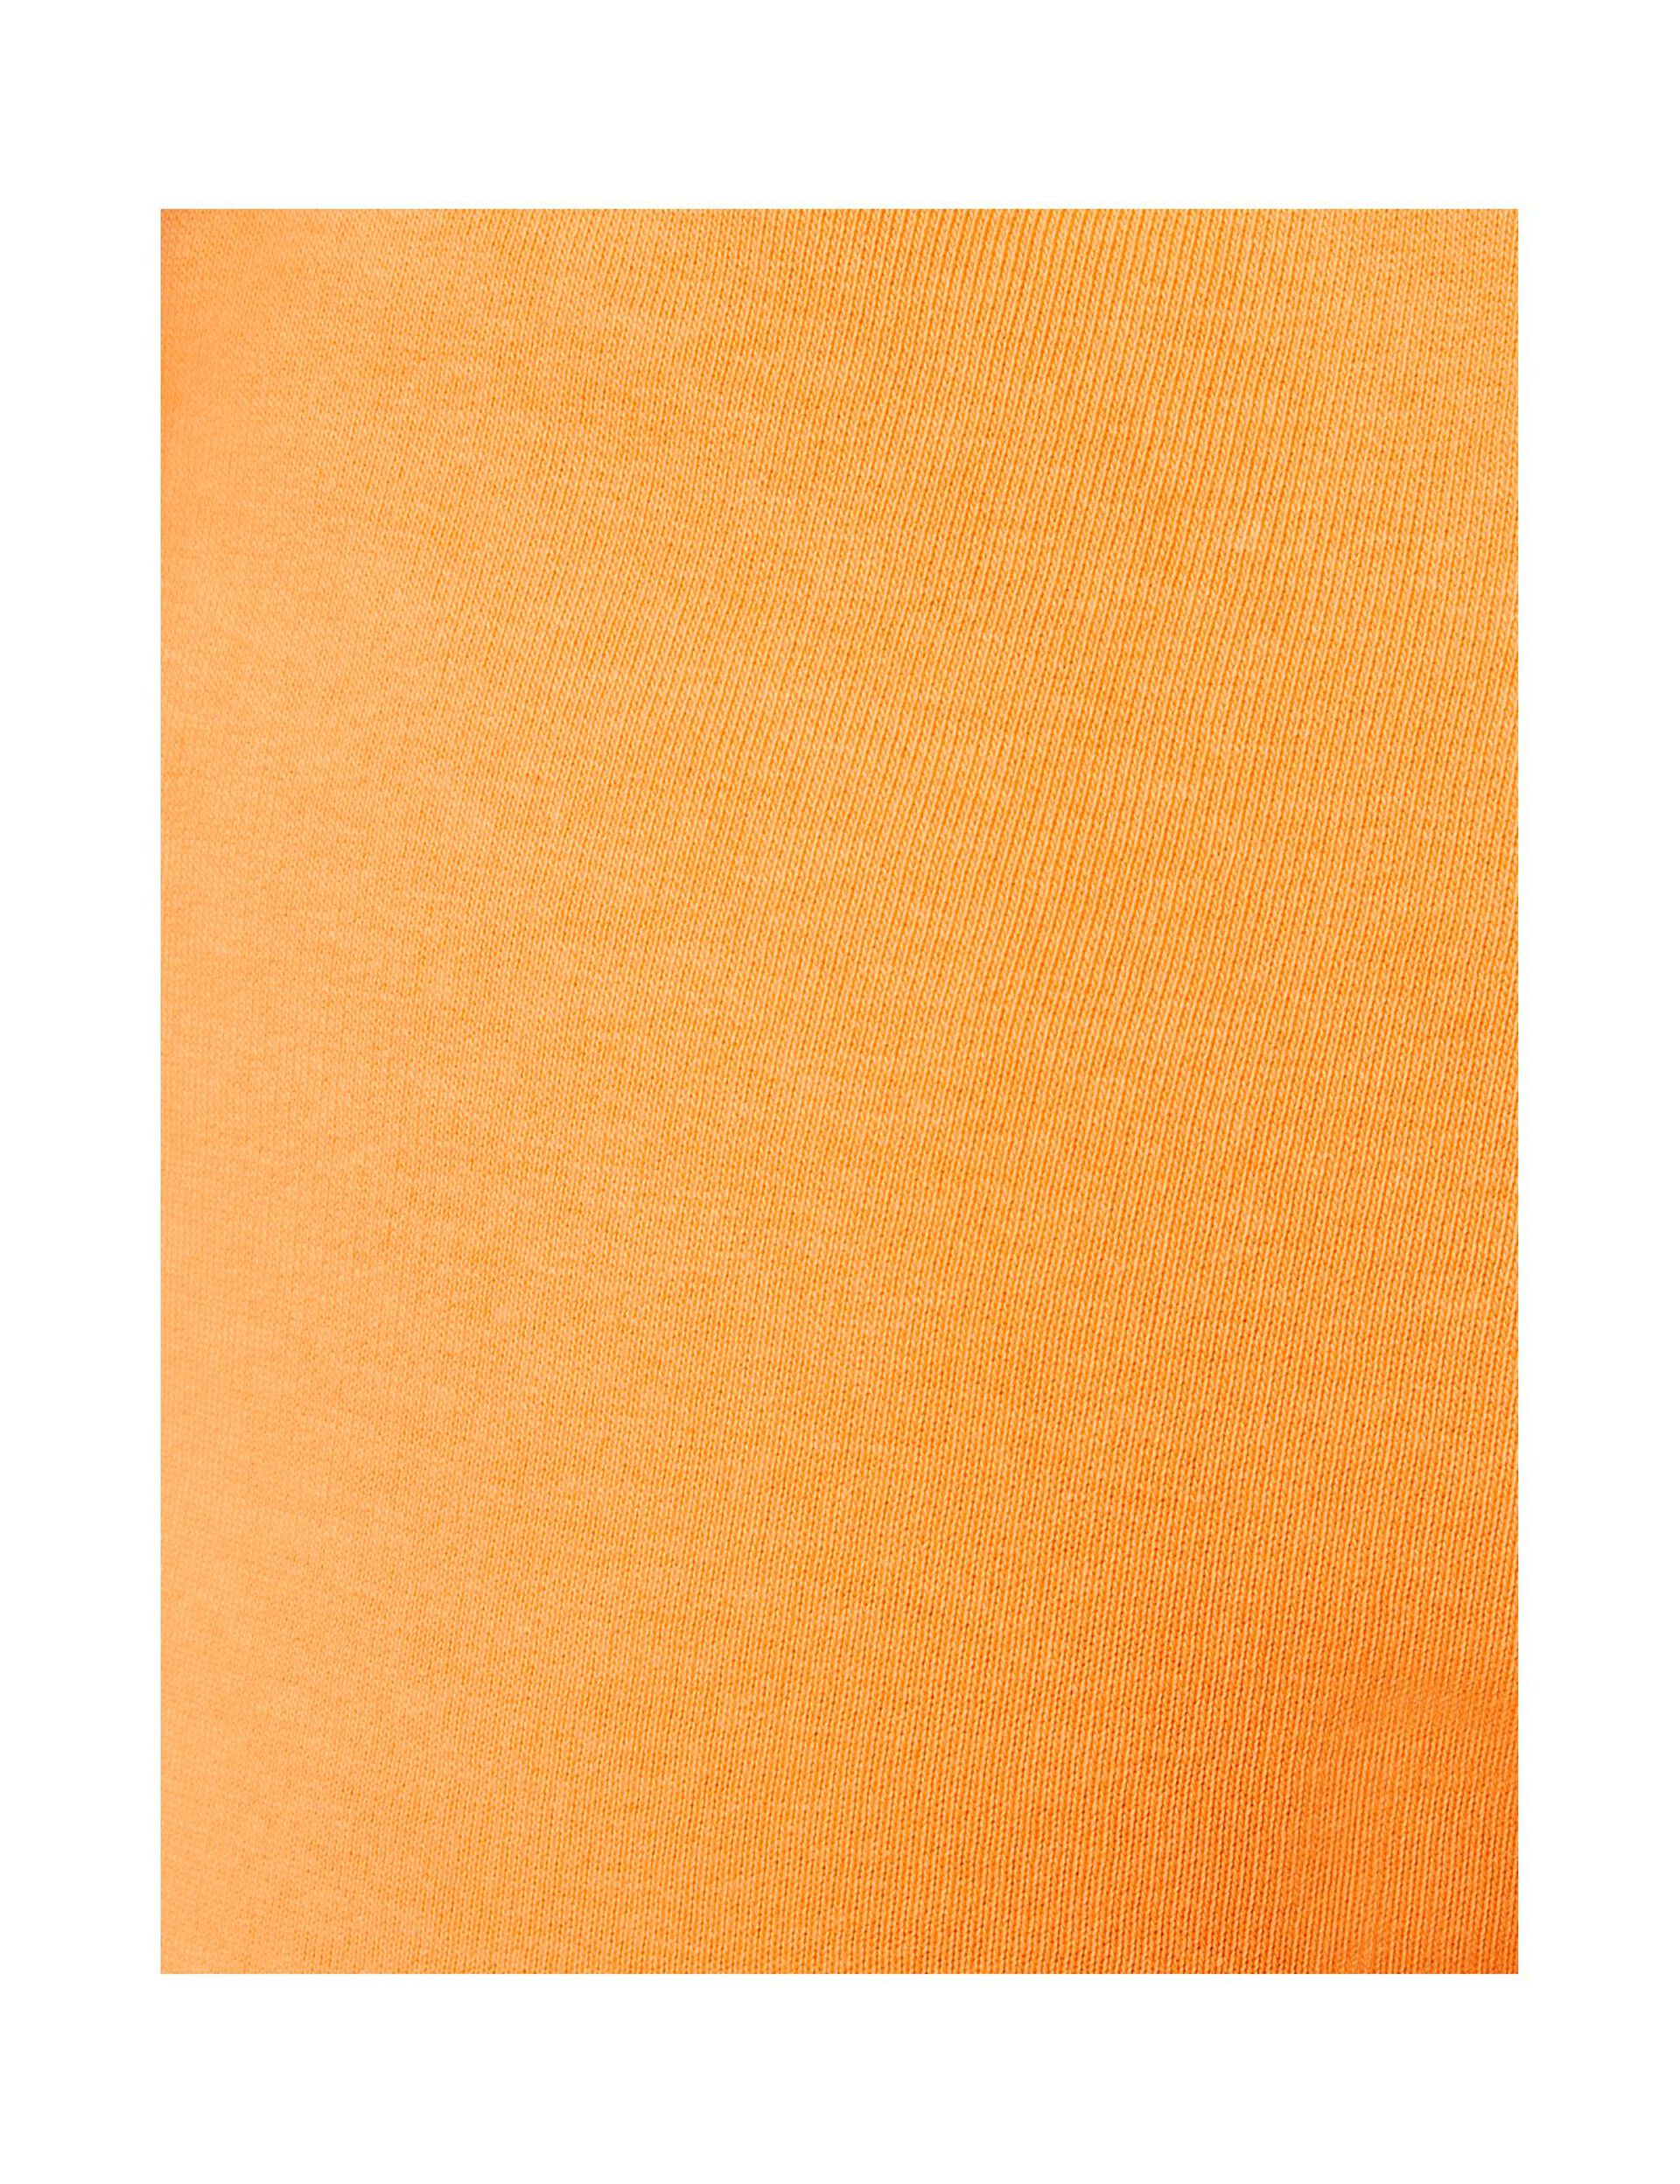 Short bicolore orange